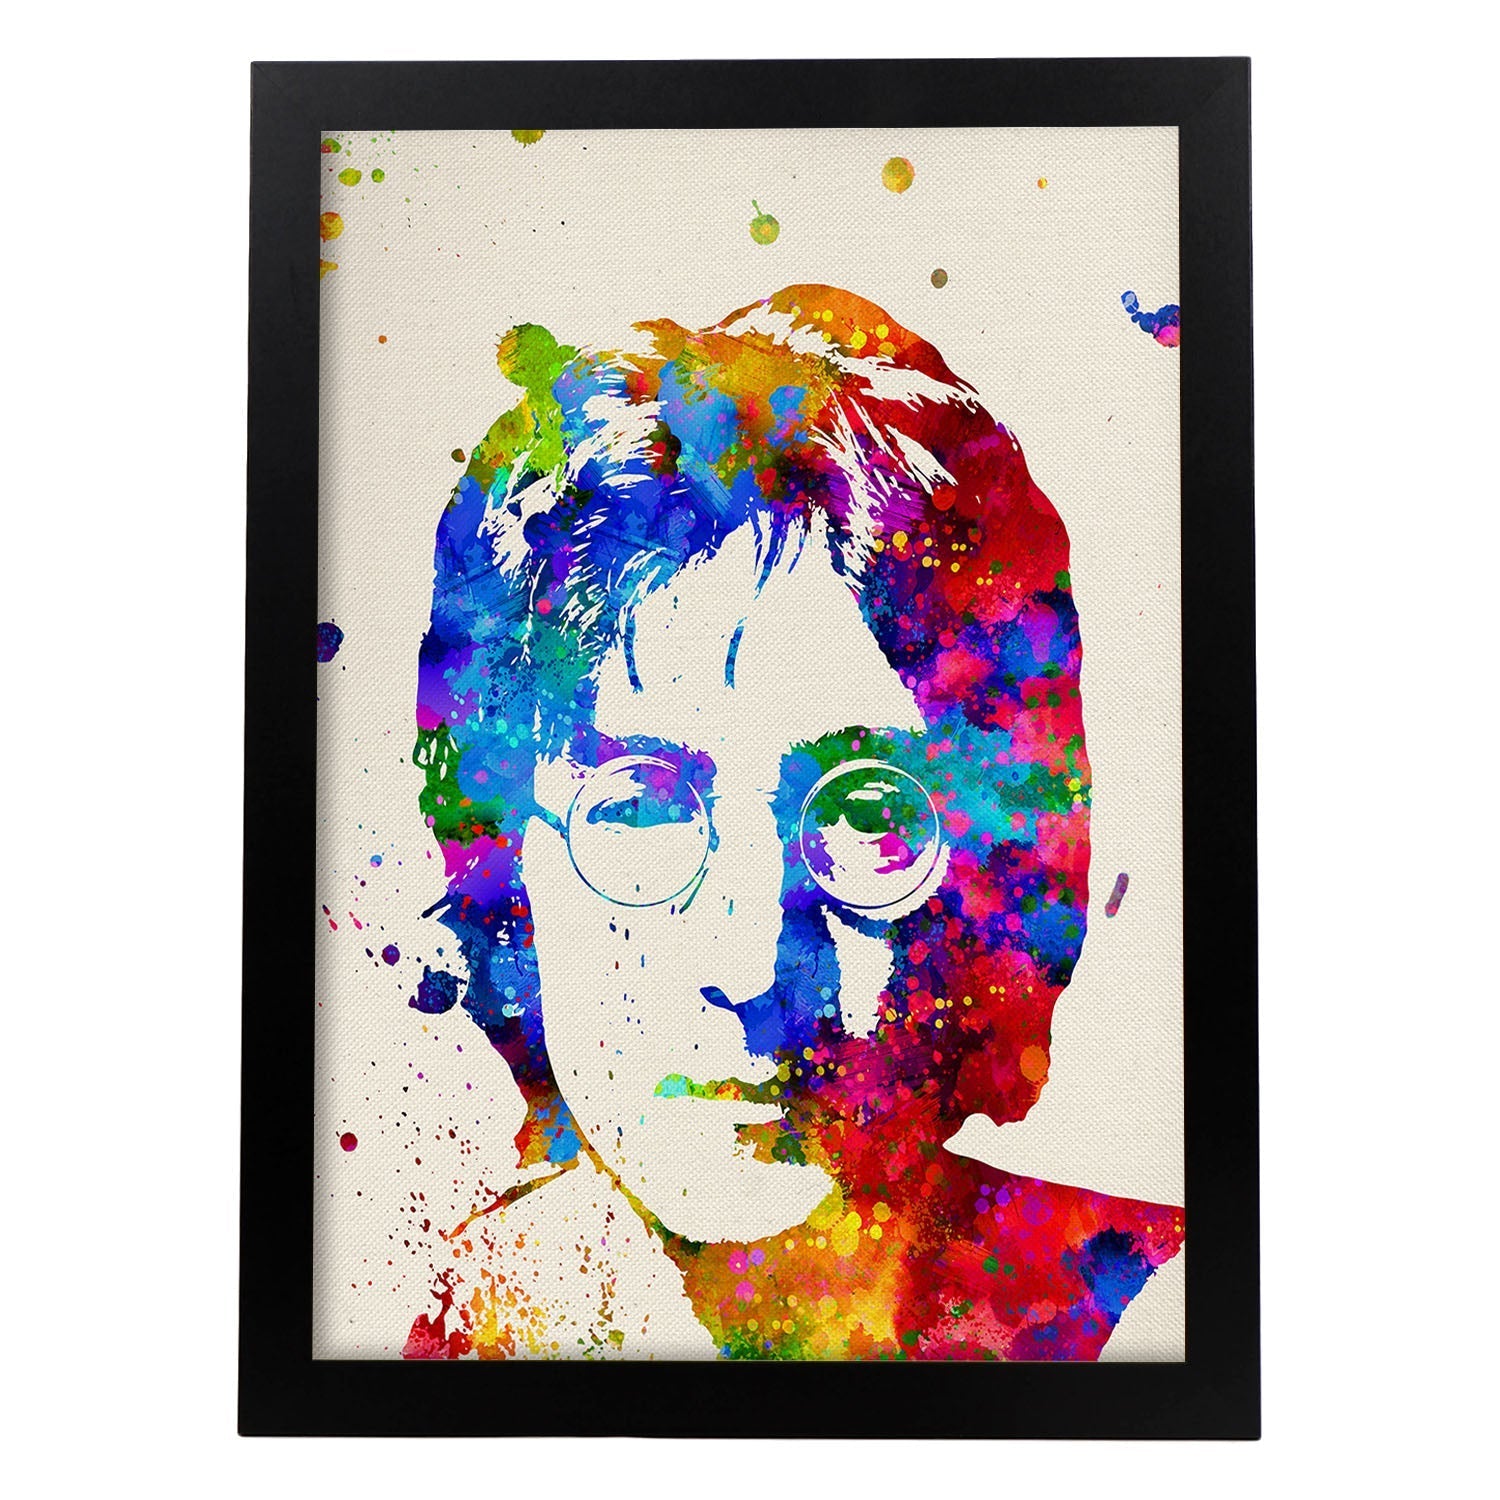 Poster imagen de John Lennon. Posters con diseño acuarela de famosos, actores, músicos-Artwork-Nacnic-A4-Marco Negro-Nacnic Estudio SL